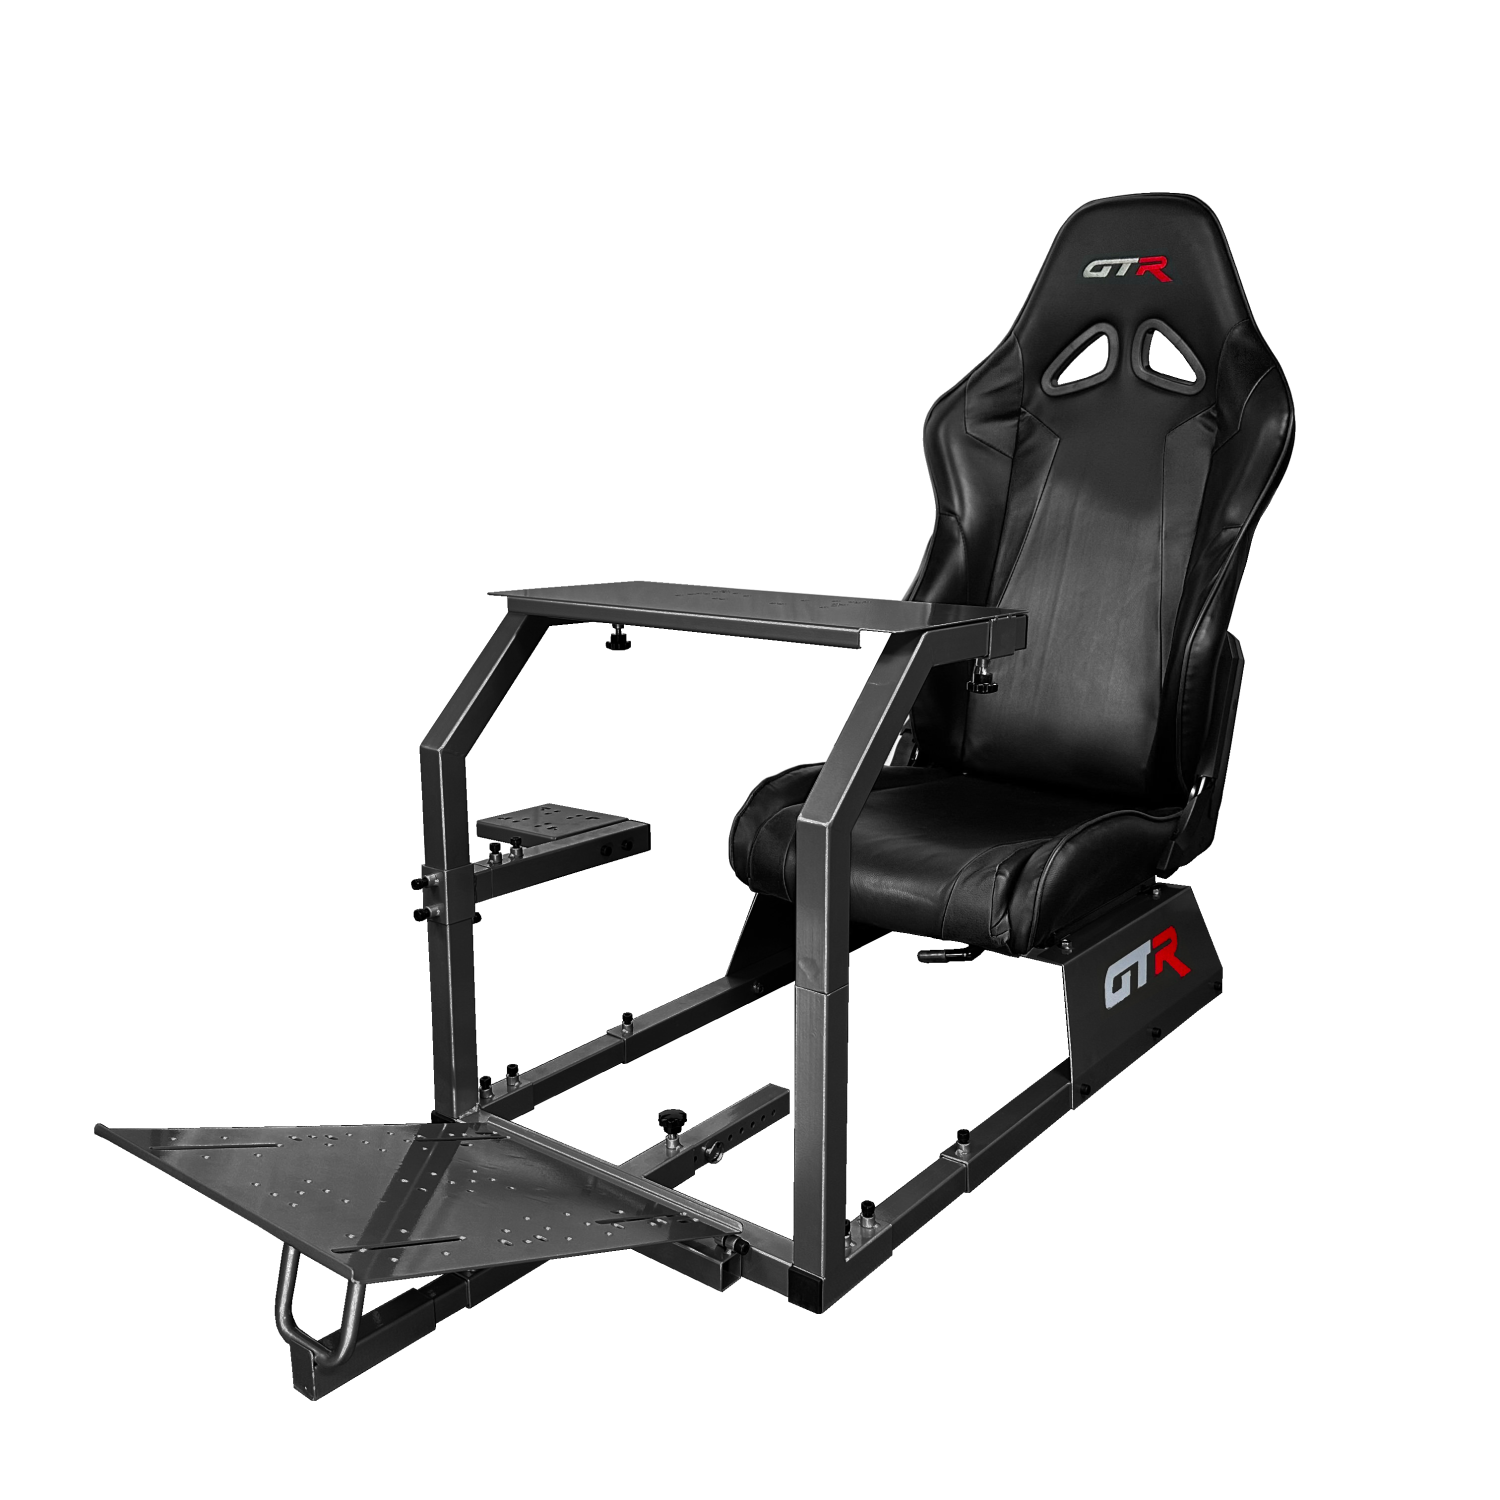 GTR Simulator GTA Model Black Frame with Black Real Racing Seat